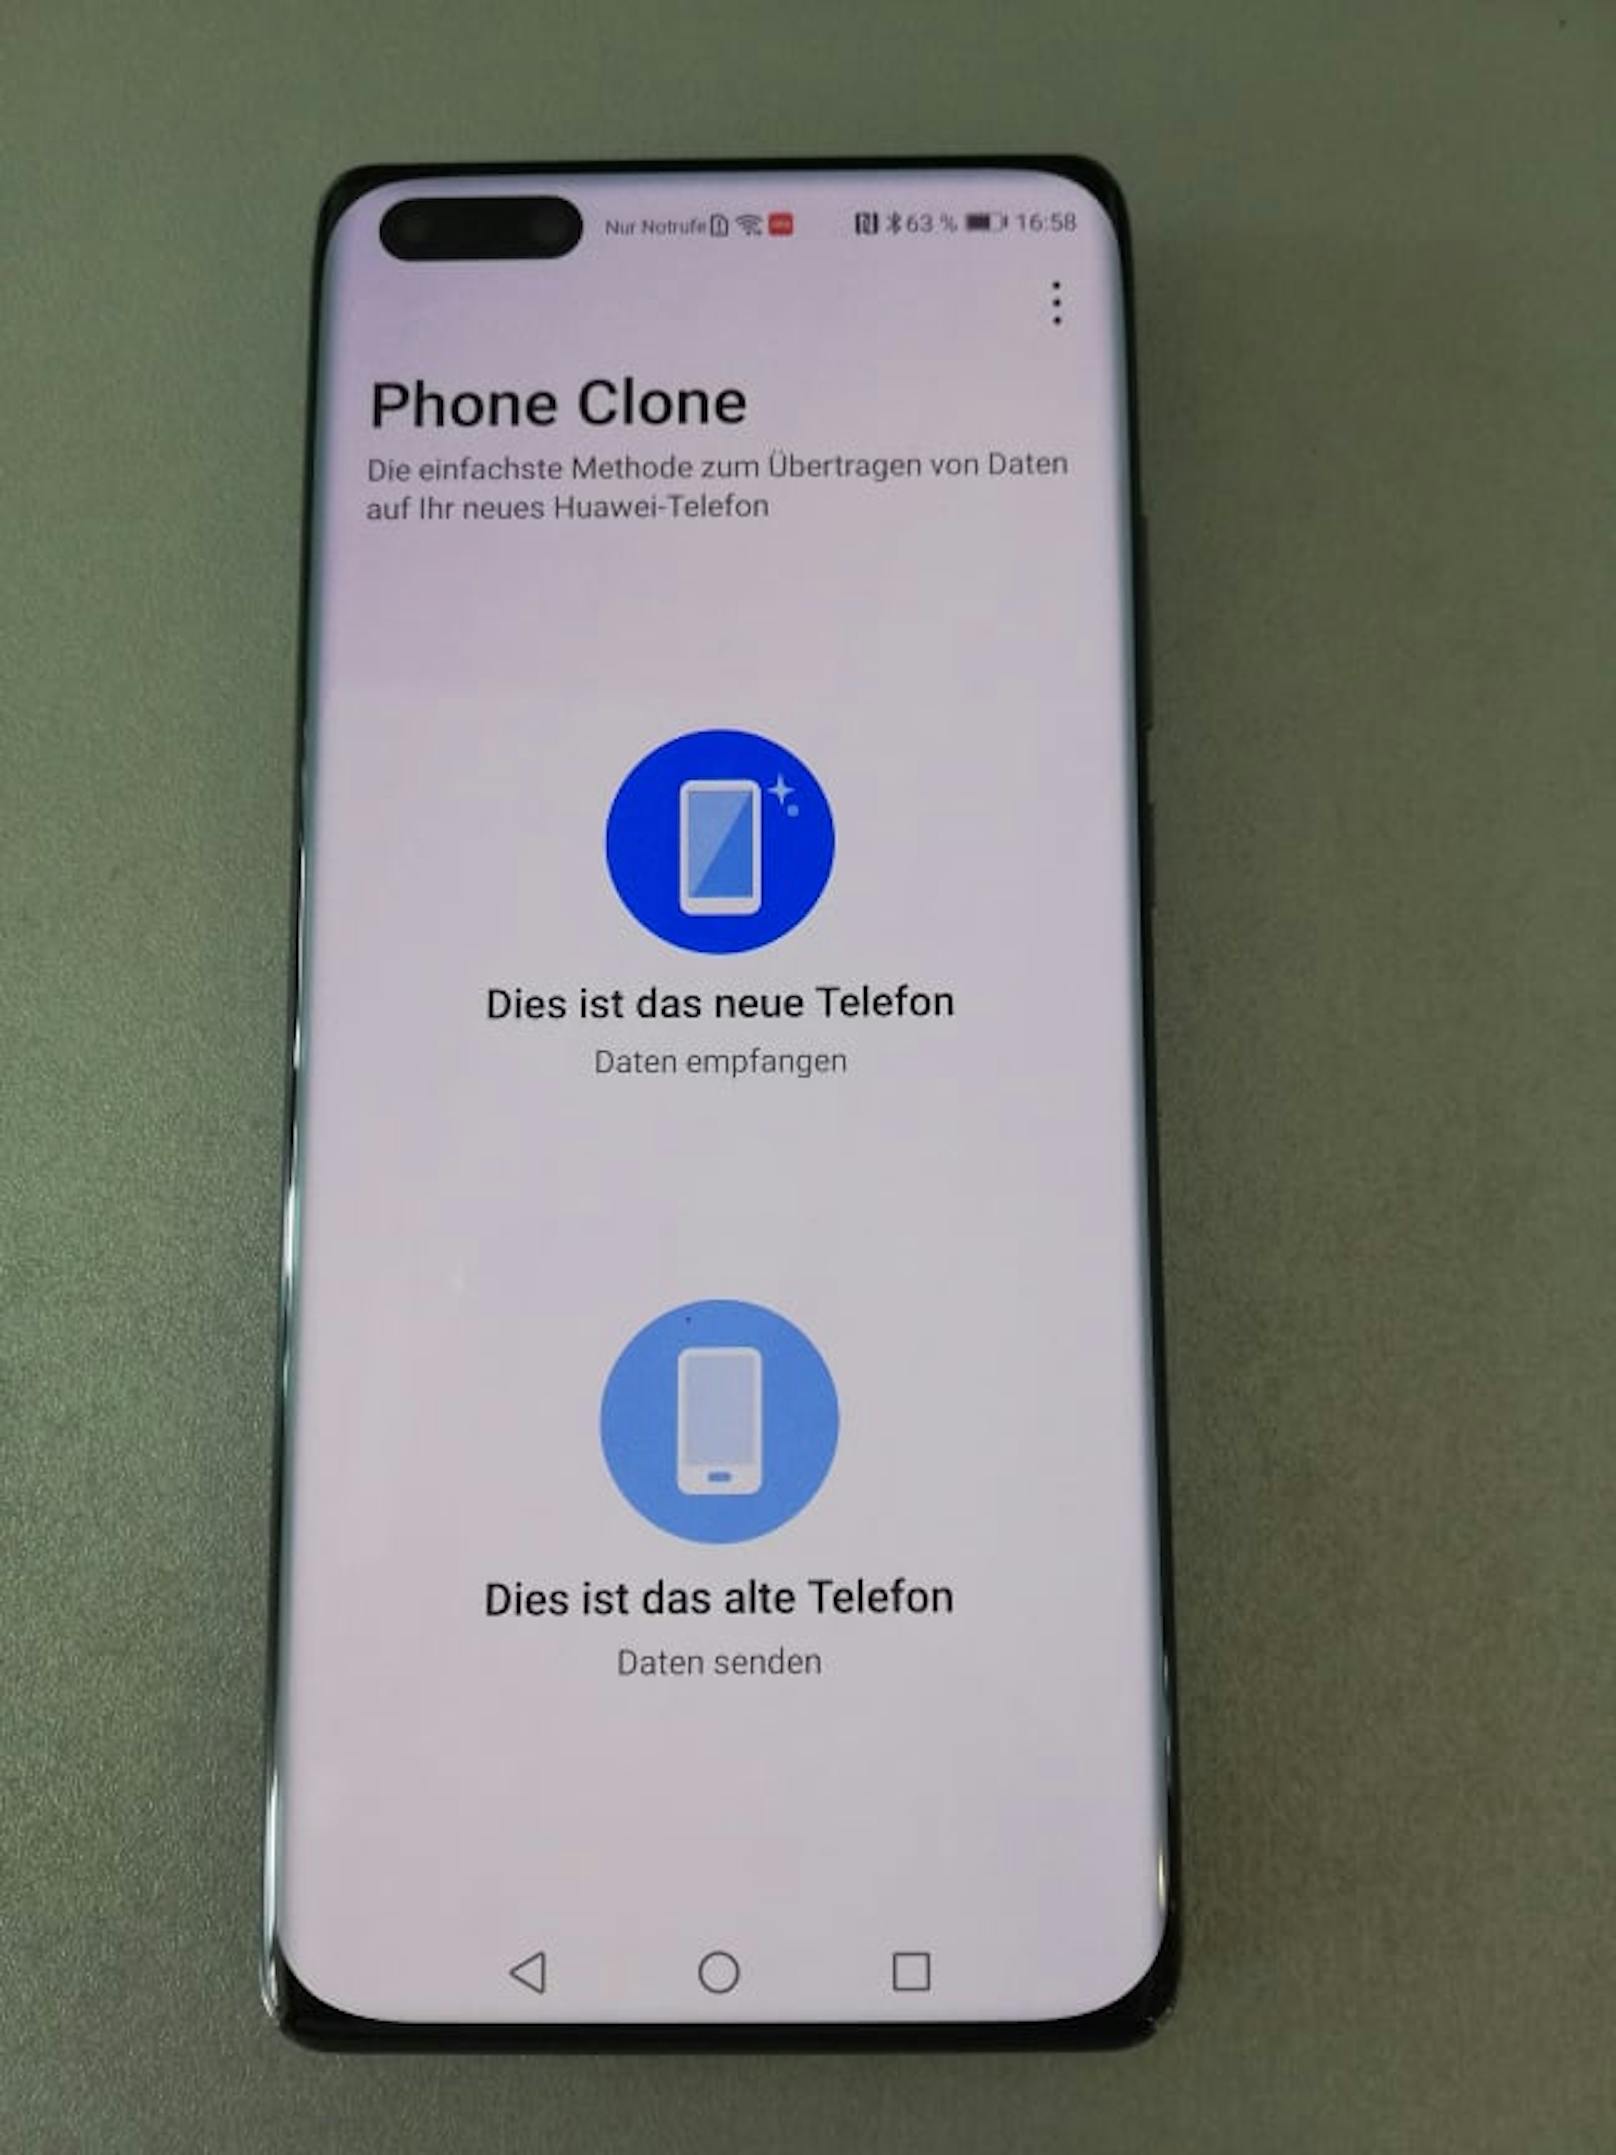 Mit Hilfe der Huawei Phone Clone App kann ich innerhalb kürzester Zeit Inhalte vom alten Huawei Smartphone auf das neue Huawei Smartphone übertragen.